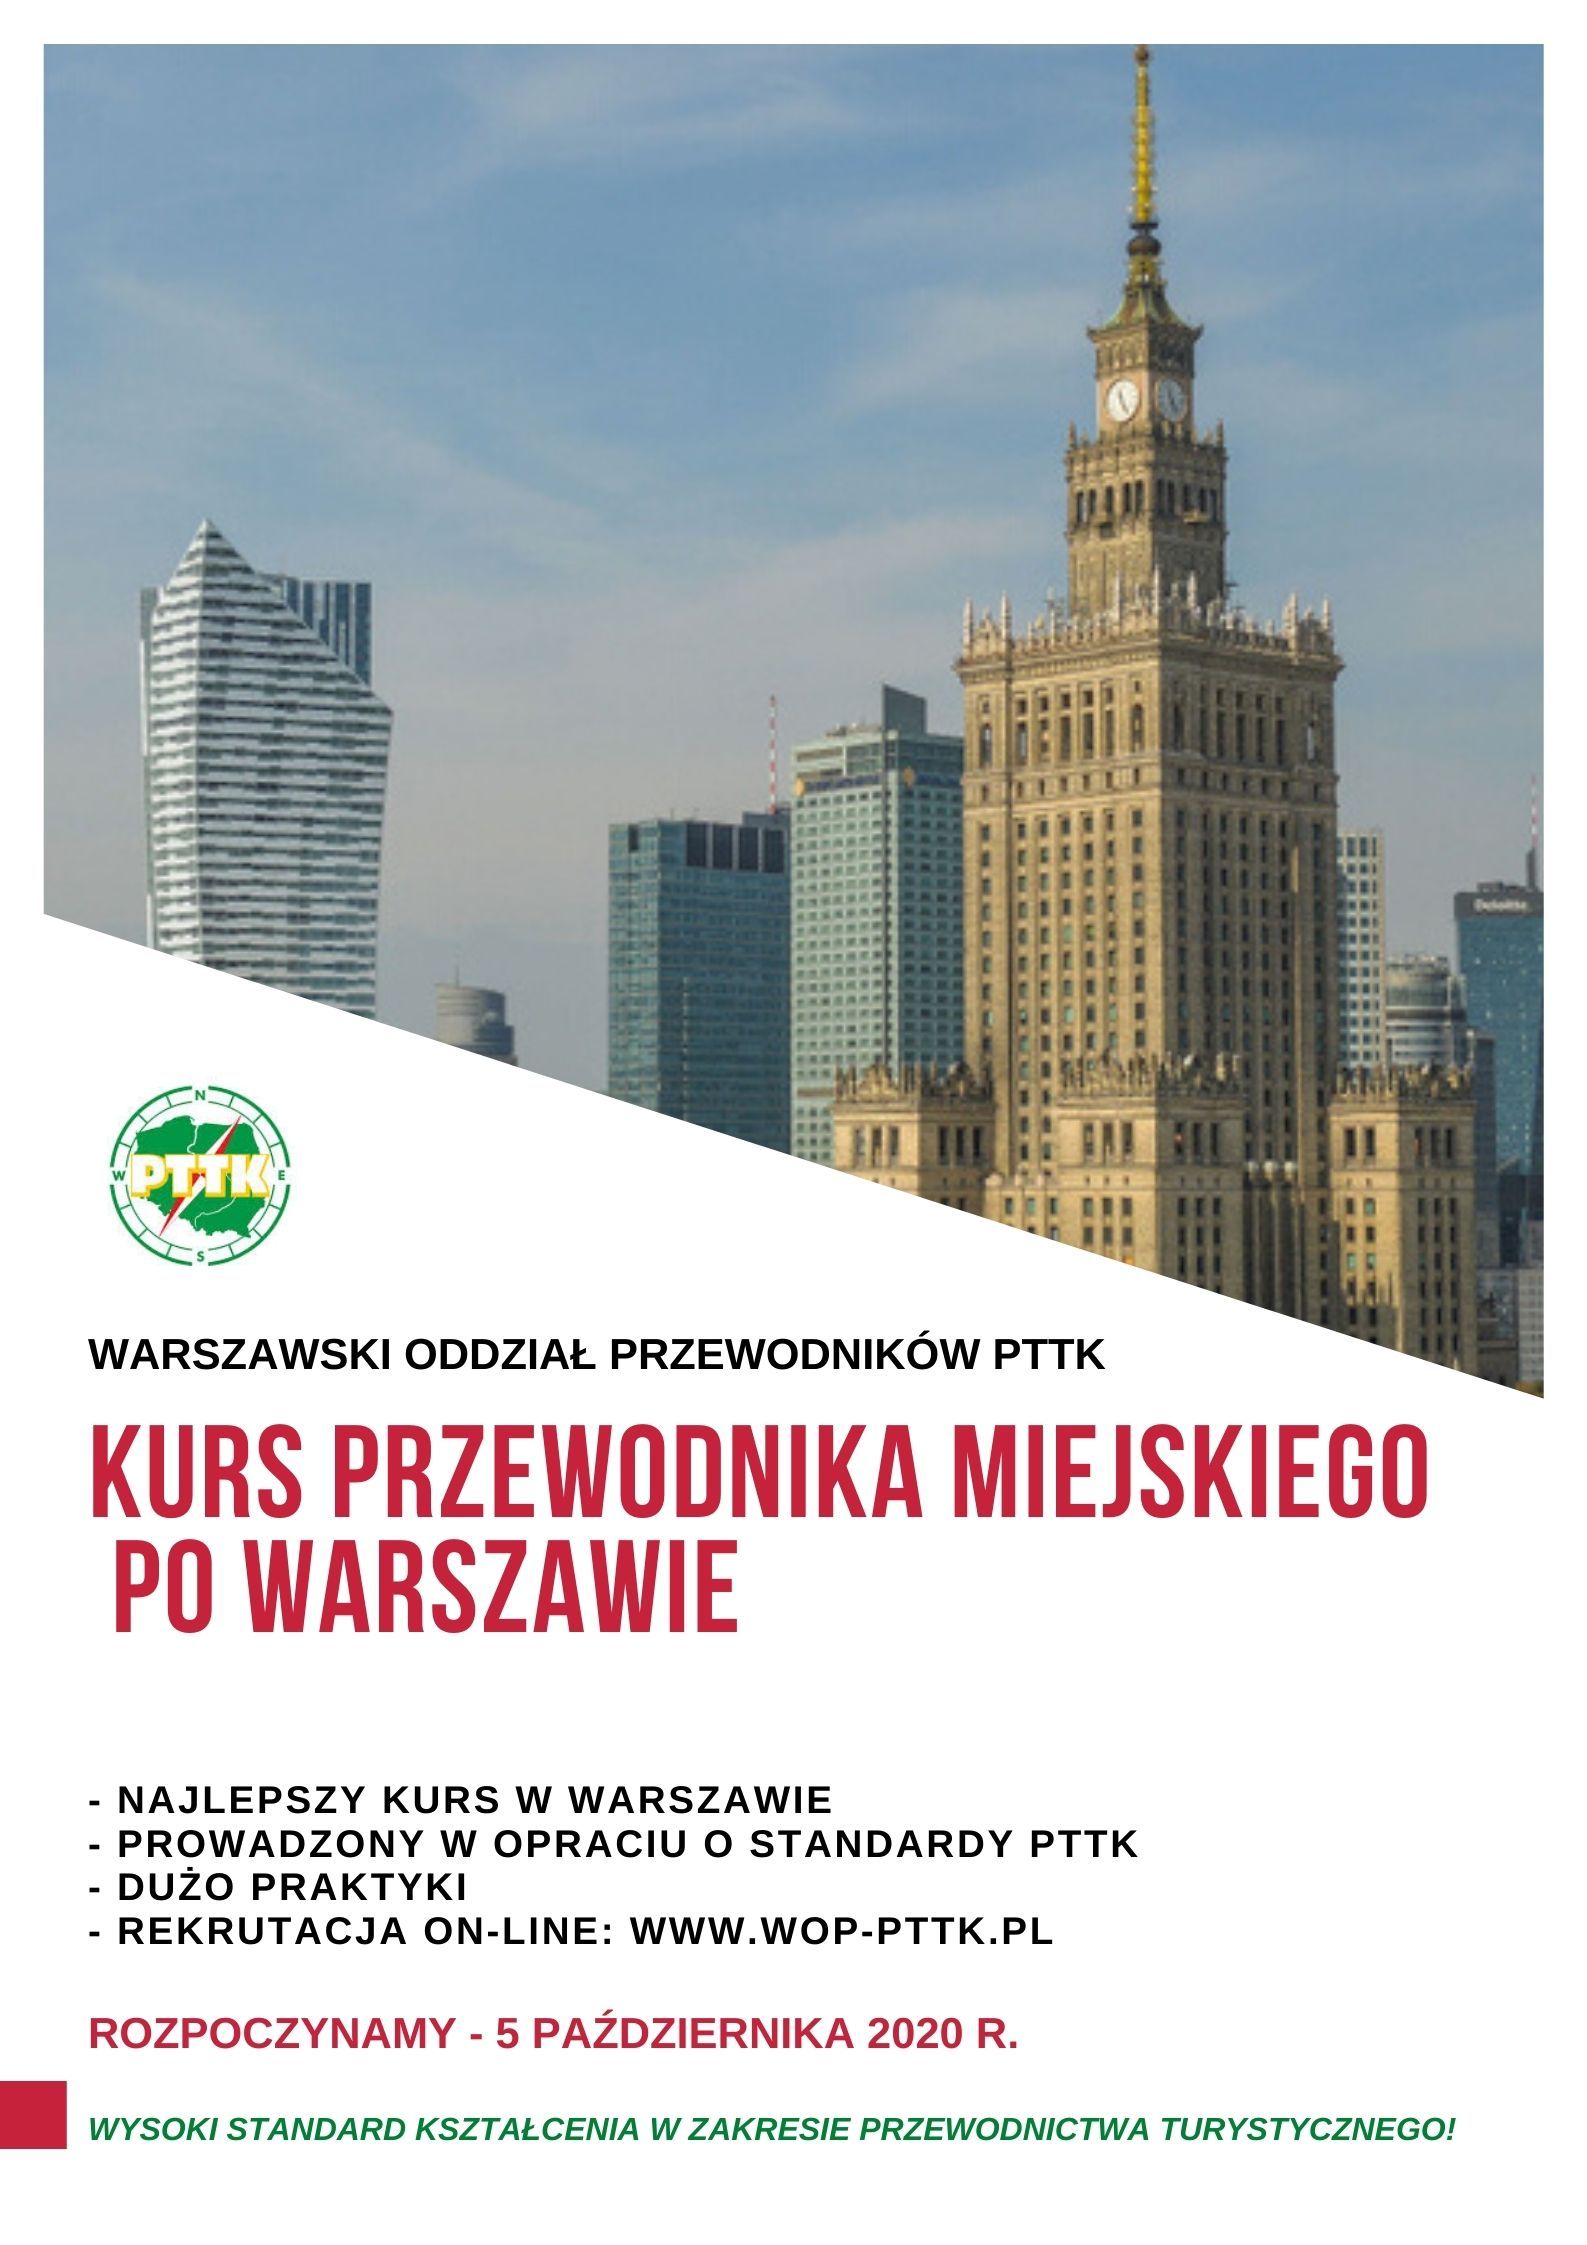 Kurs przewodnika miejskiego PTTK po Warszawie - 5.10.2020 r.